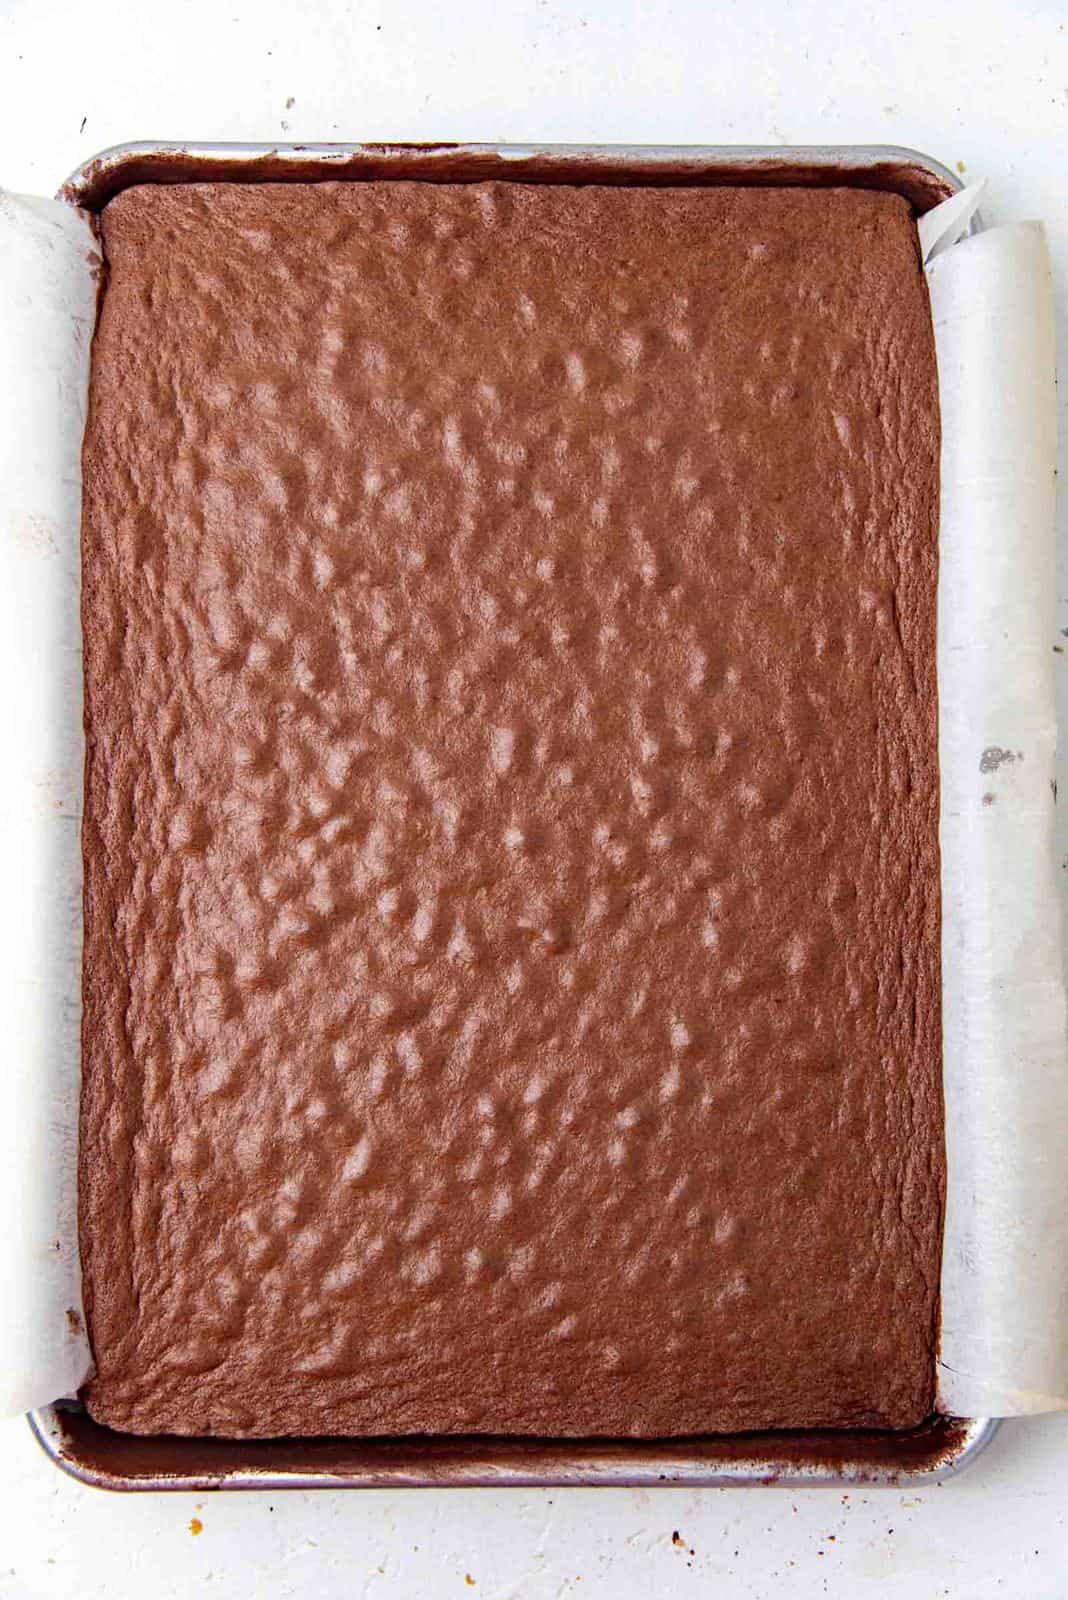 Freshly baked chocolate sponge cake for swiss roll